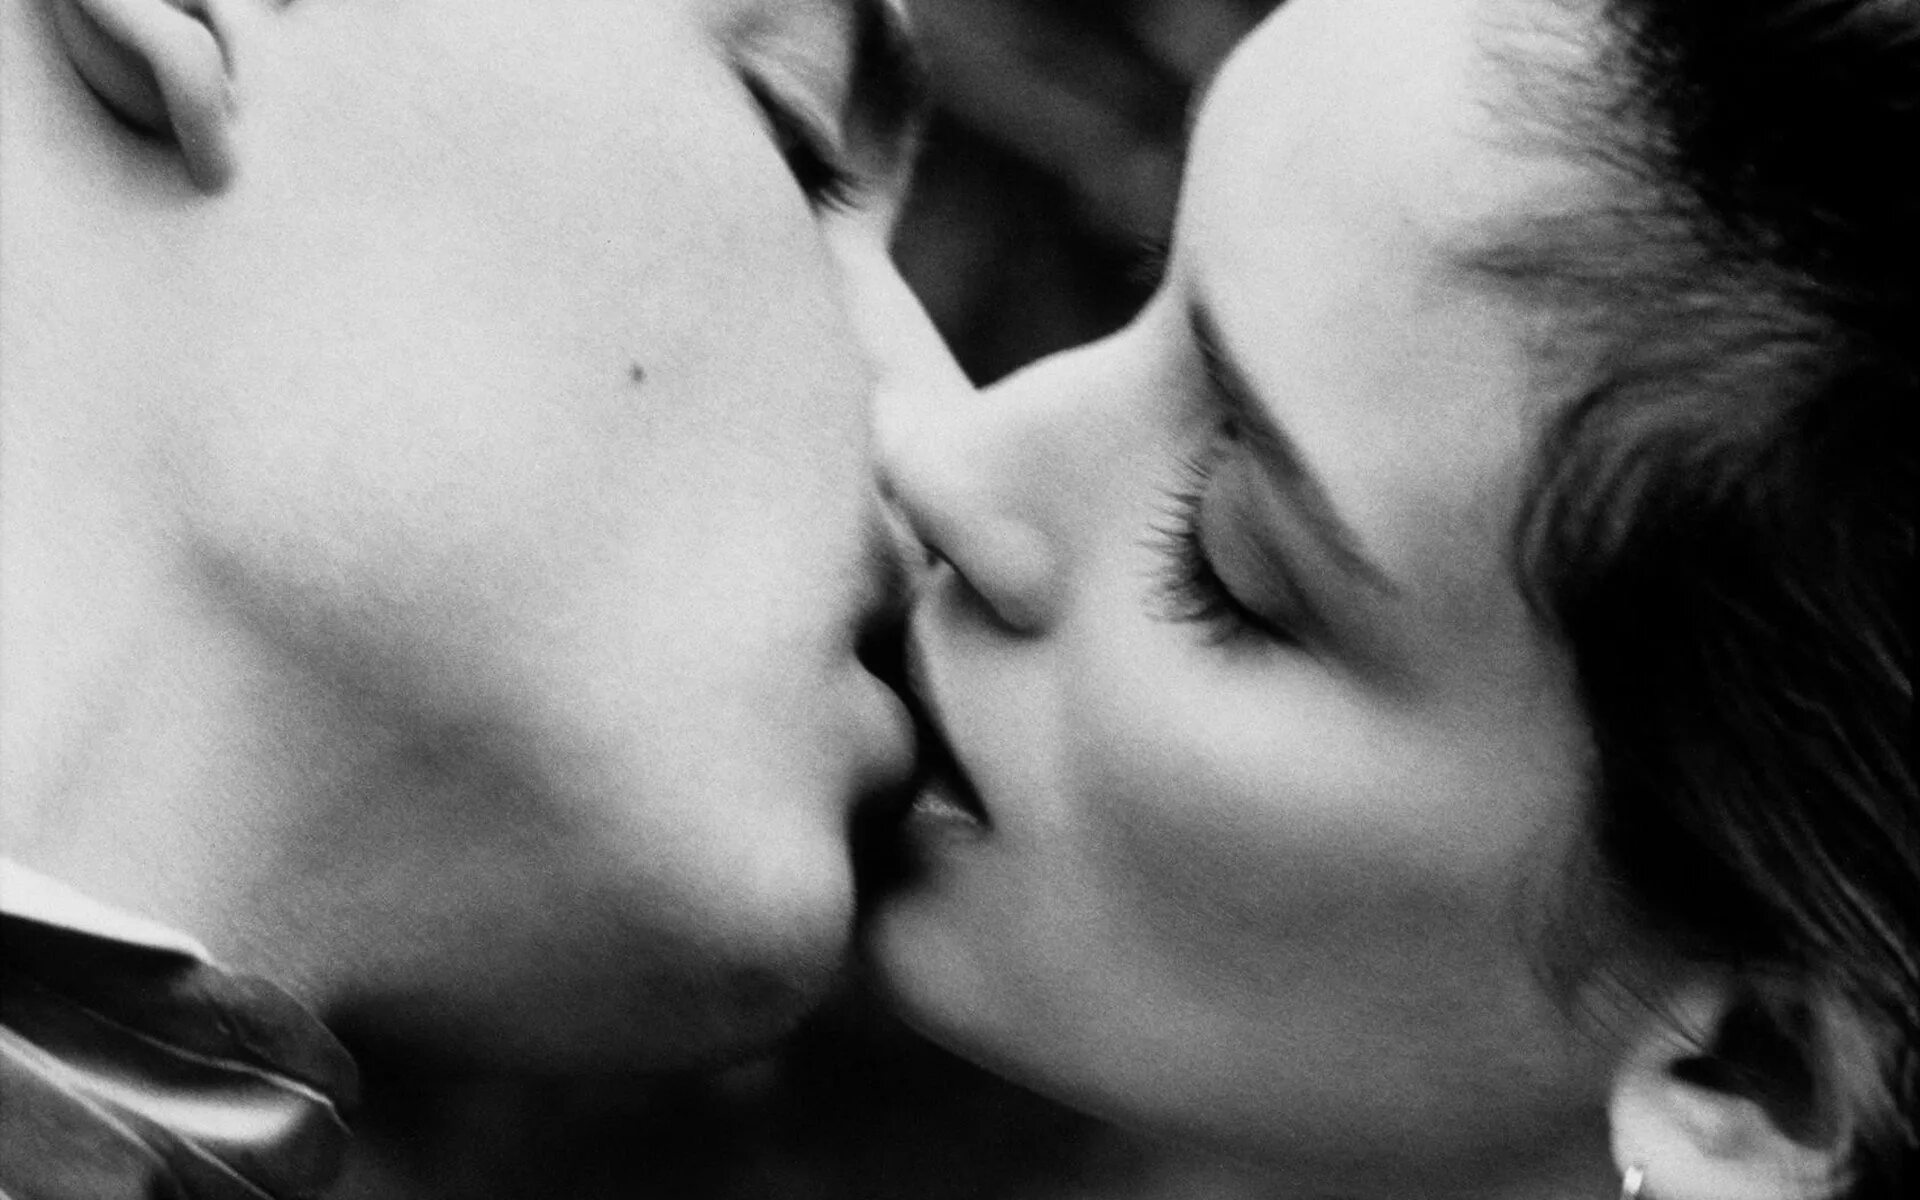 I like kissing. Нежный поцелуй. Красивый поцелуй. Нежный поцелуй в губы. Любовный поцелуй.